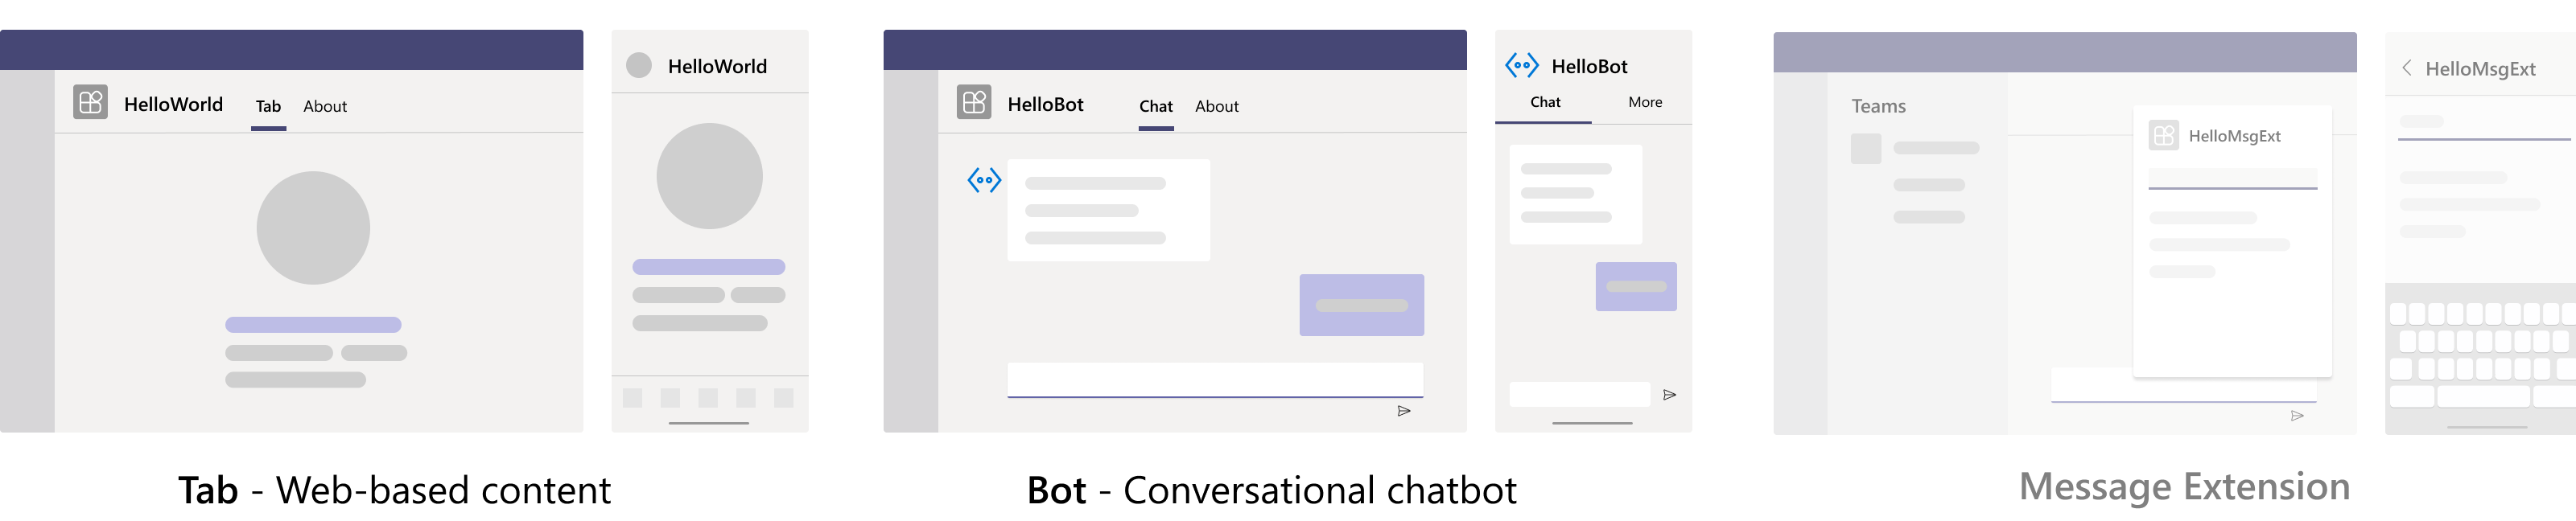 Captura de ecrã a mostrar a aplicação Blazor com o separador Bot e a Saída da Extensão de Mensagem depois de o guia passo a passo do Blazor ter sido concluído com êxito.